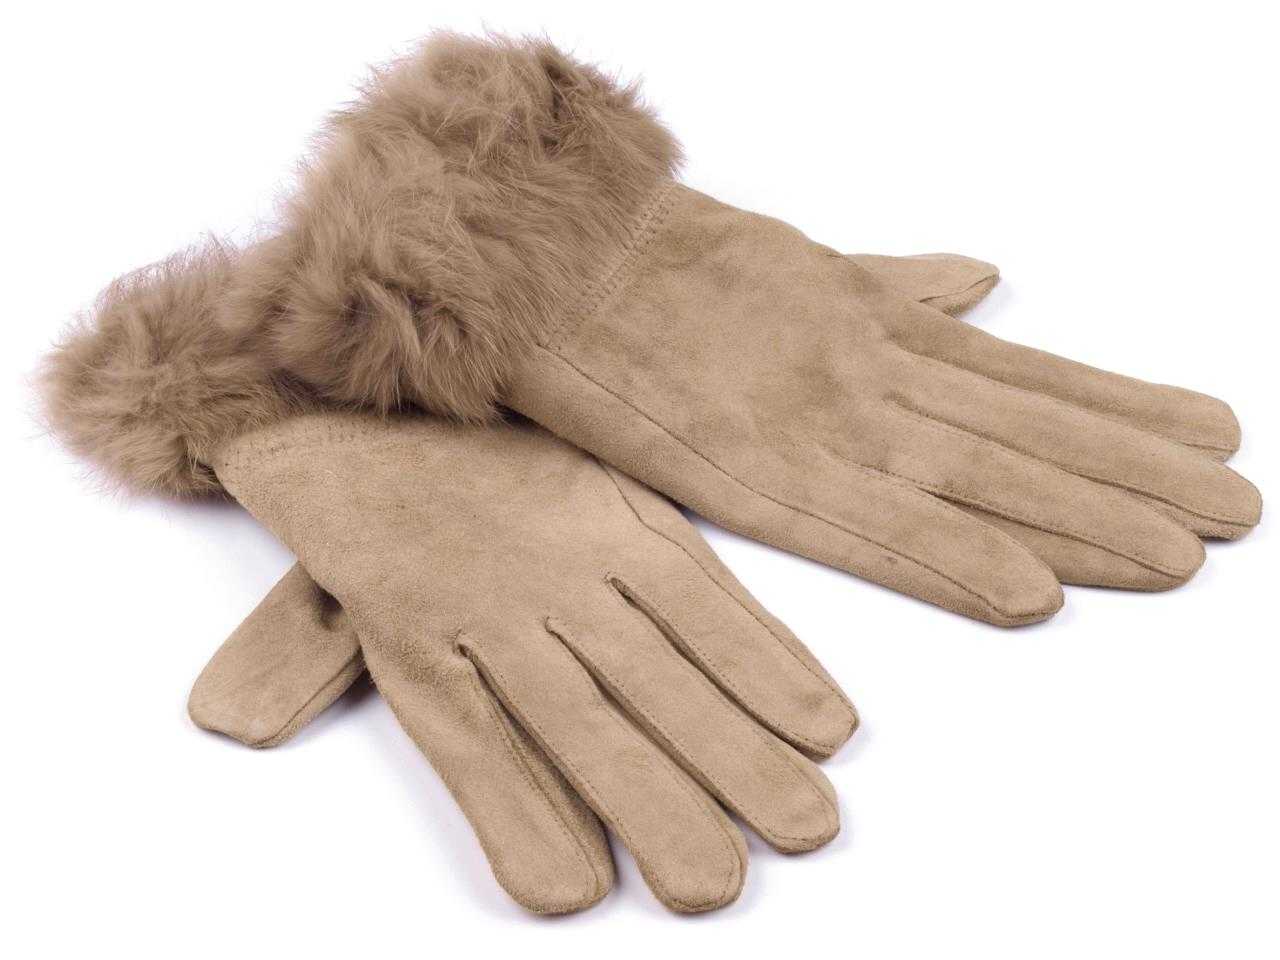 Как почистить перчатки (белые, светлые) из натуральной кожи в домашних условиях?